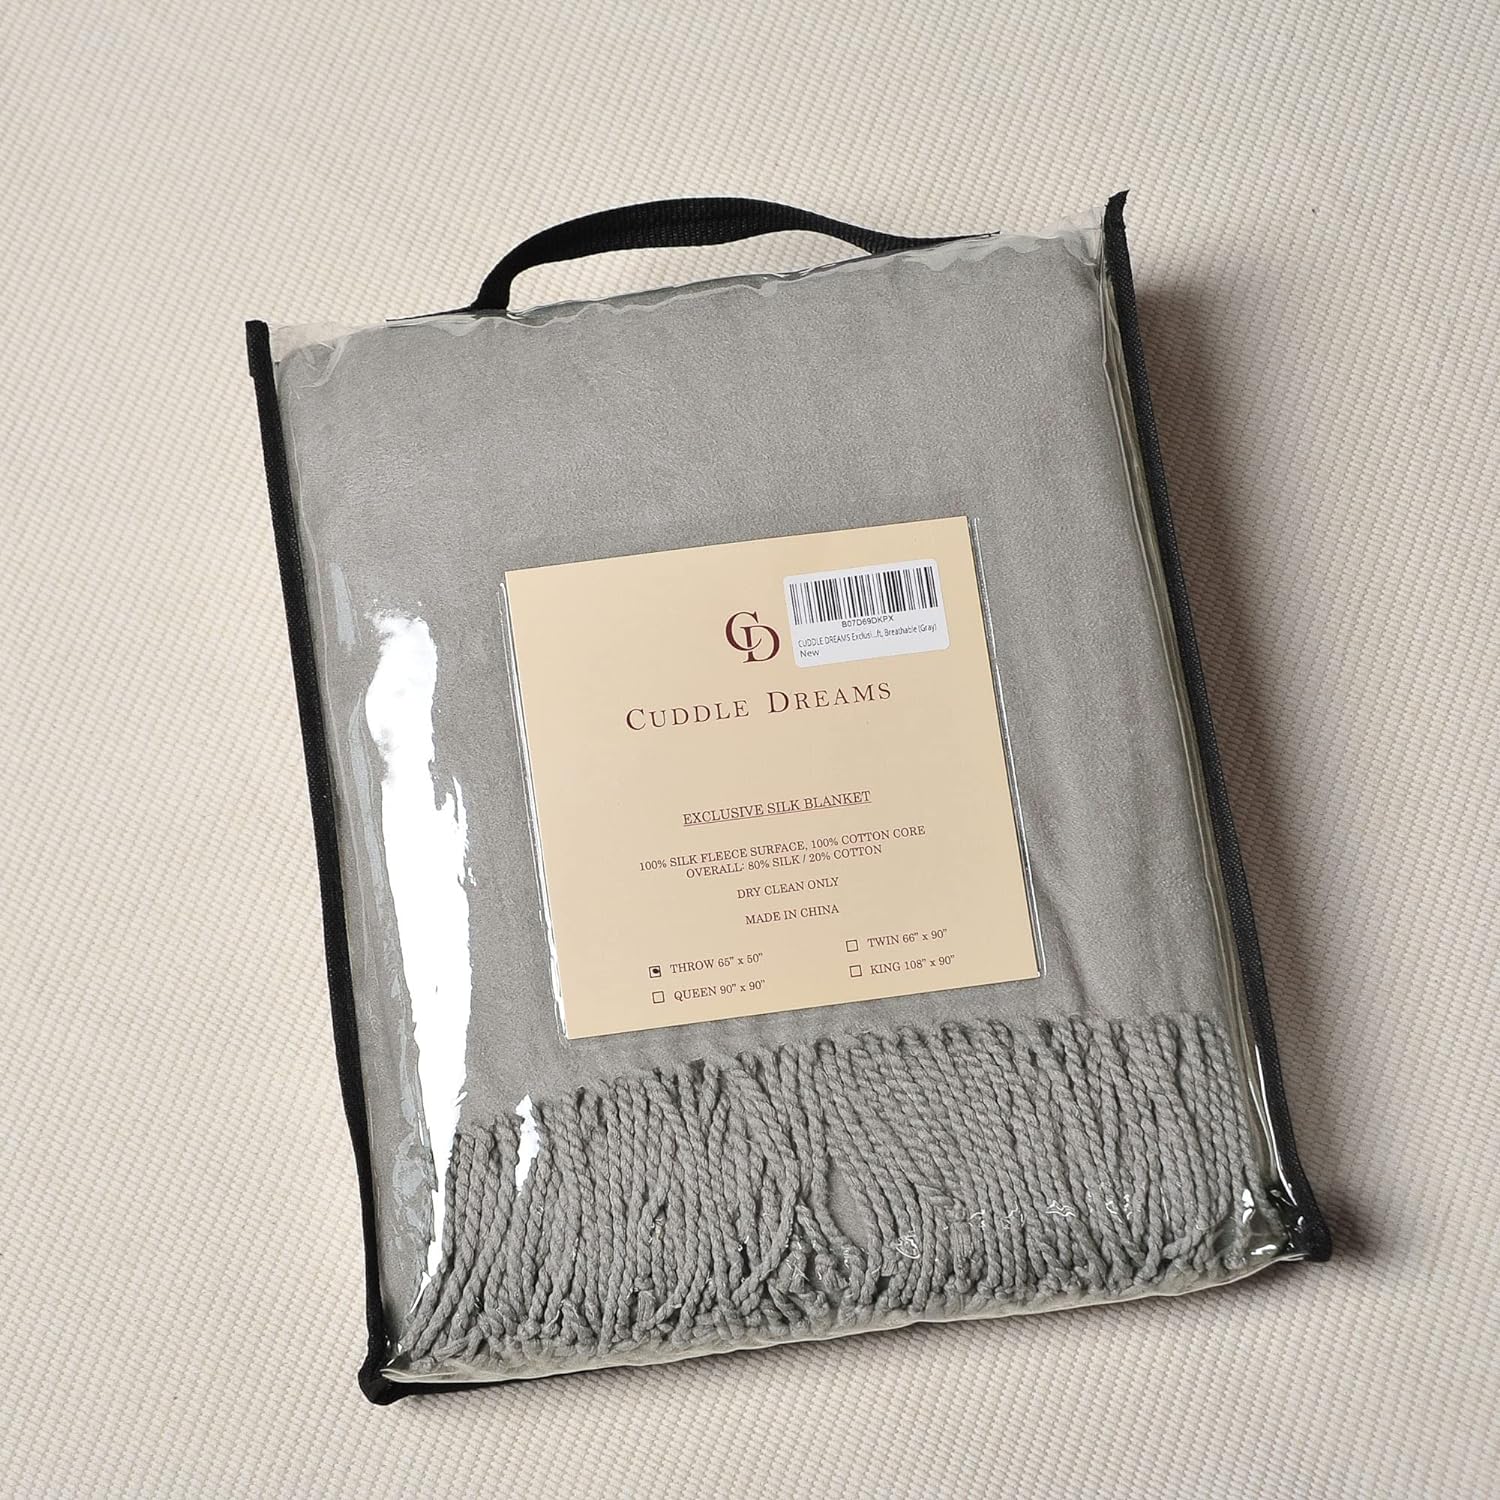 Exclusiva manta de seda de morera con flecos, naturalmente suave, transpirable